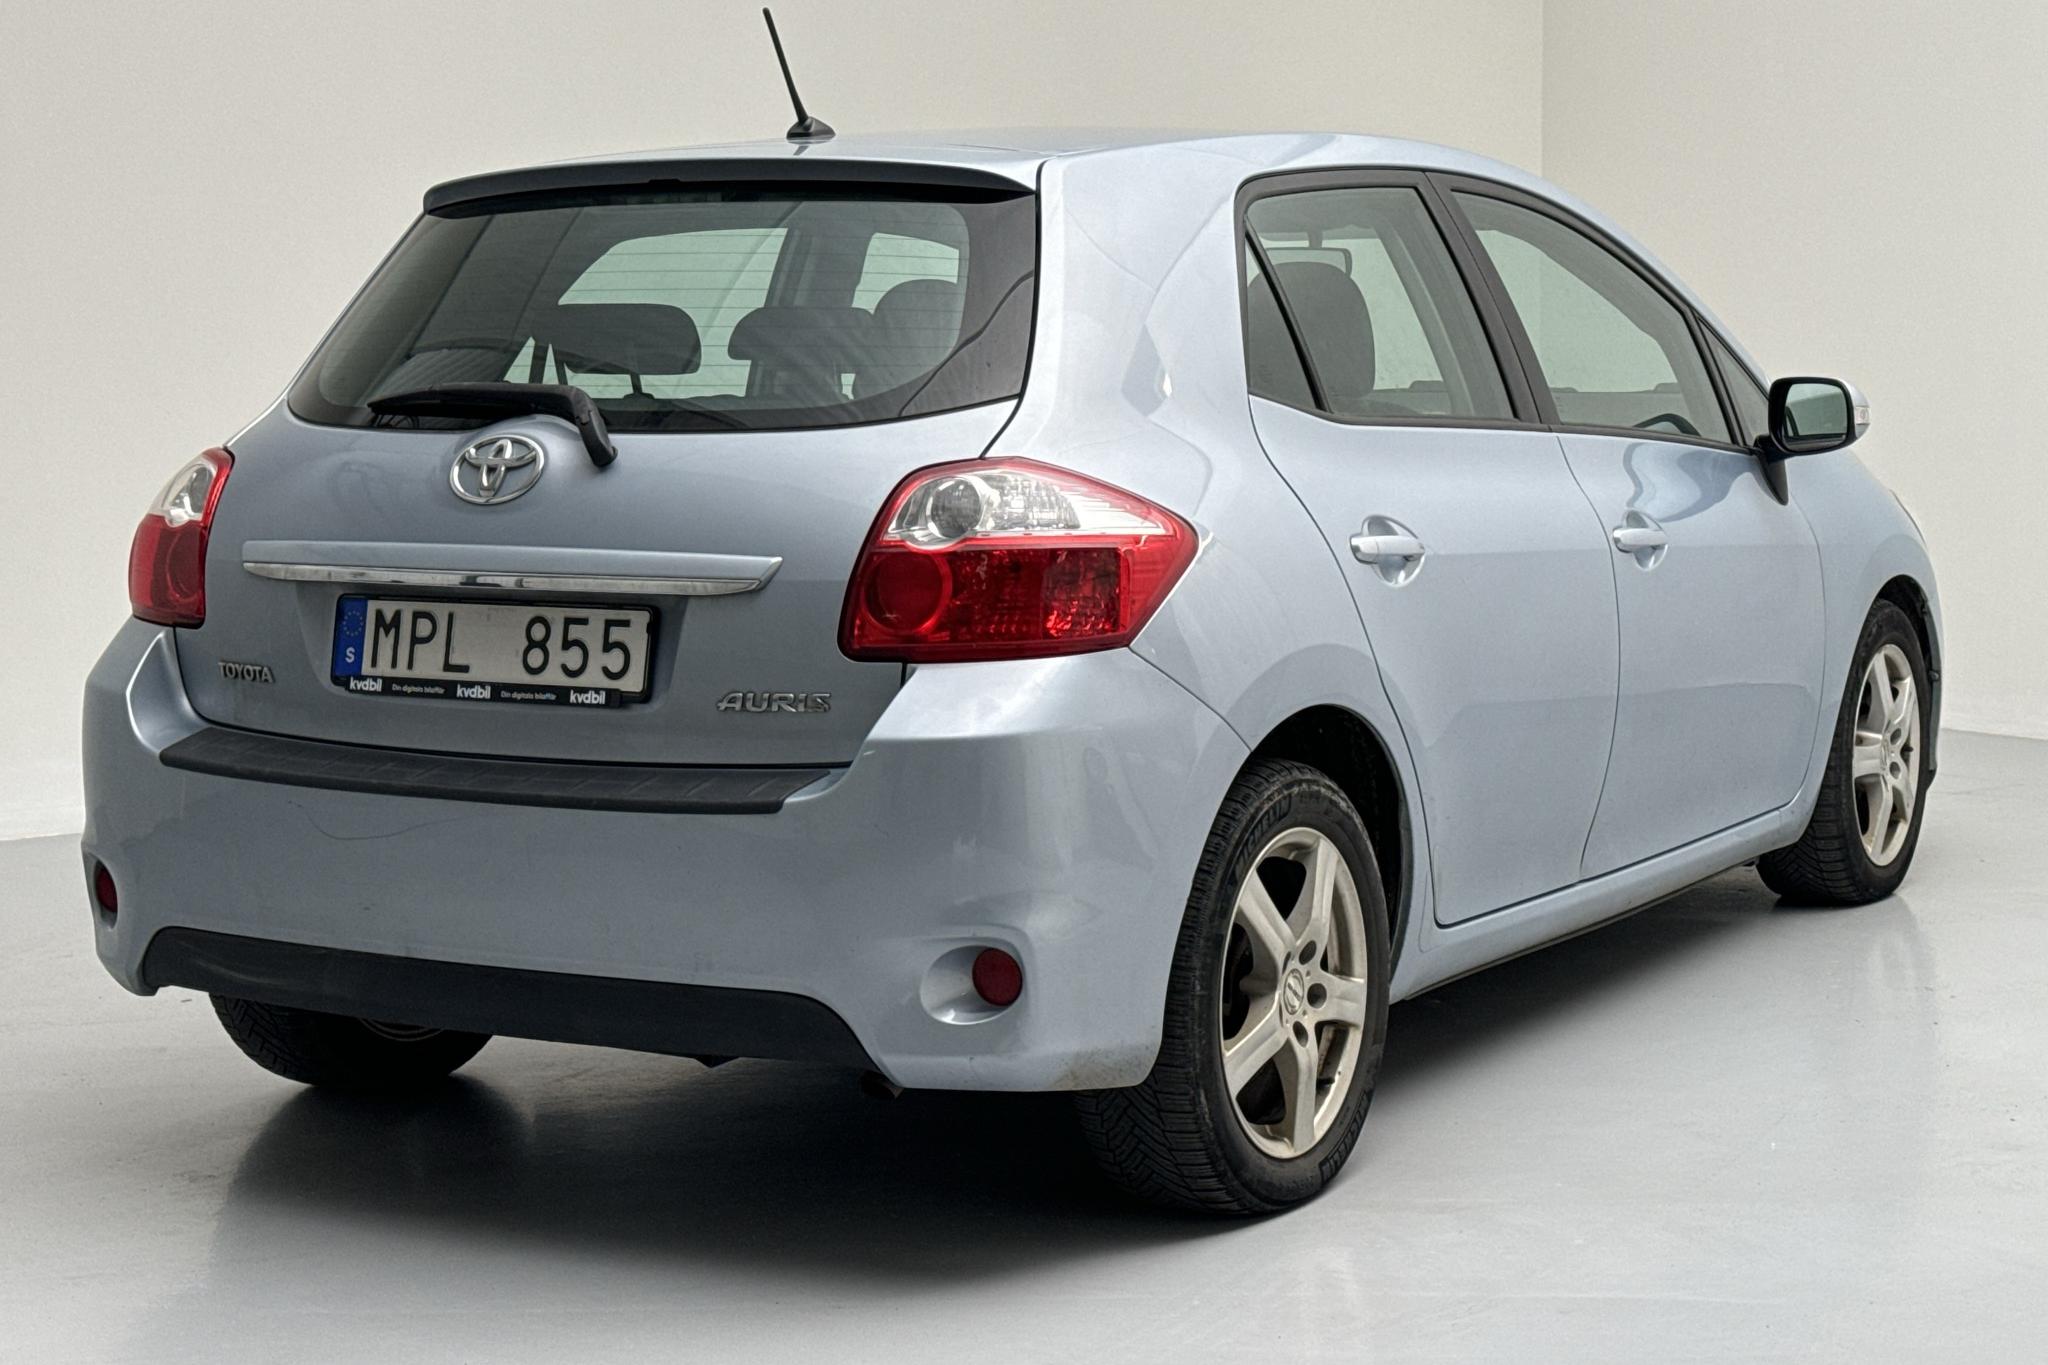 Toyota Auris 1.4 D-4D 5dr (90hk) - 21 310 mil - Manuell - Light Blue - 2010